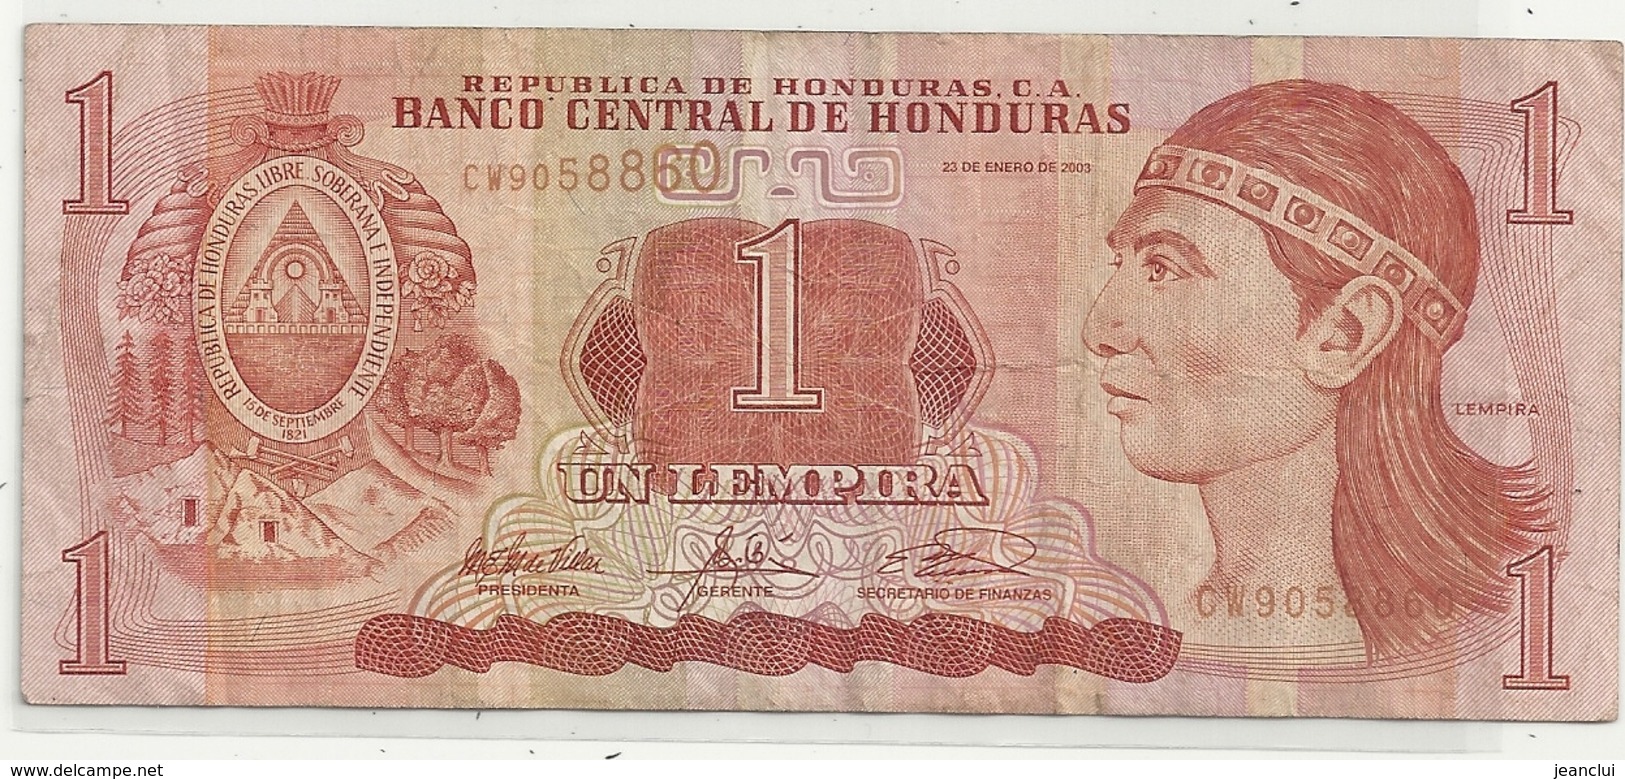 BANCO CENTRAL DE HONDURAS . 1 LEMPIRA . ISSUE 23 DE ENERO DE 2003 . 2 SCANES - Honduras